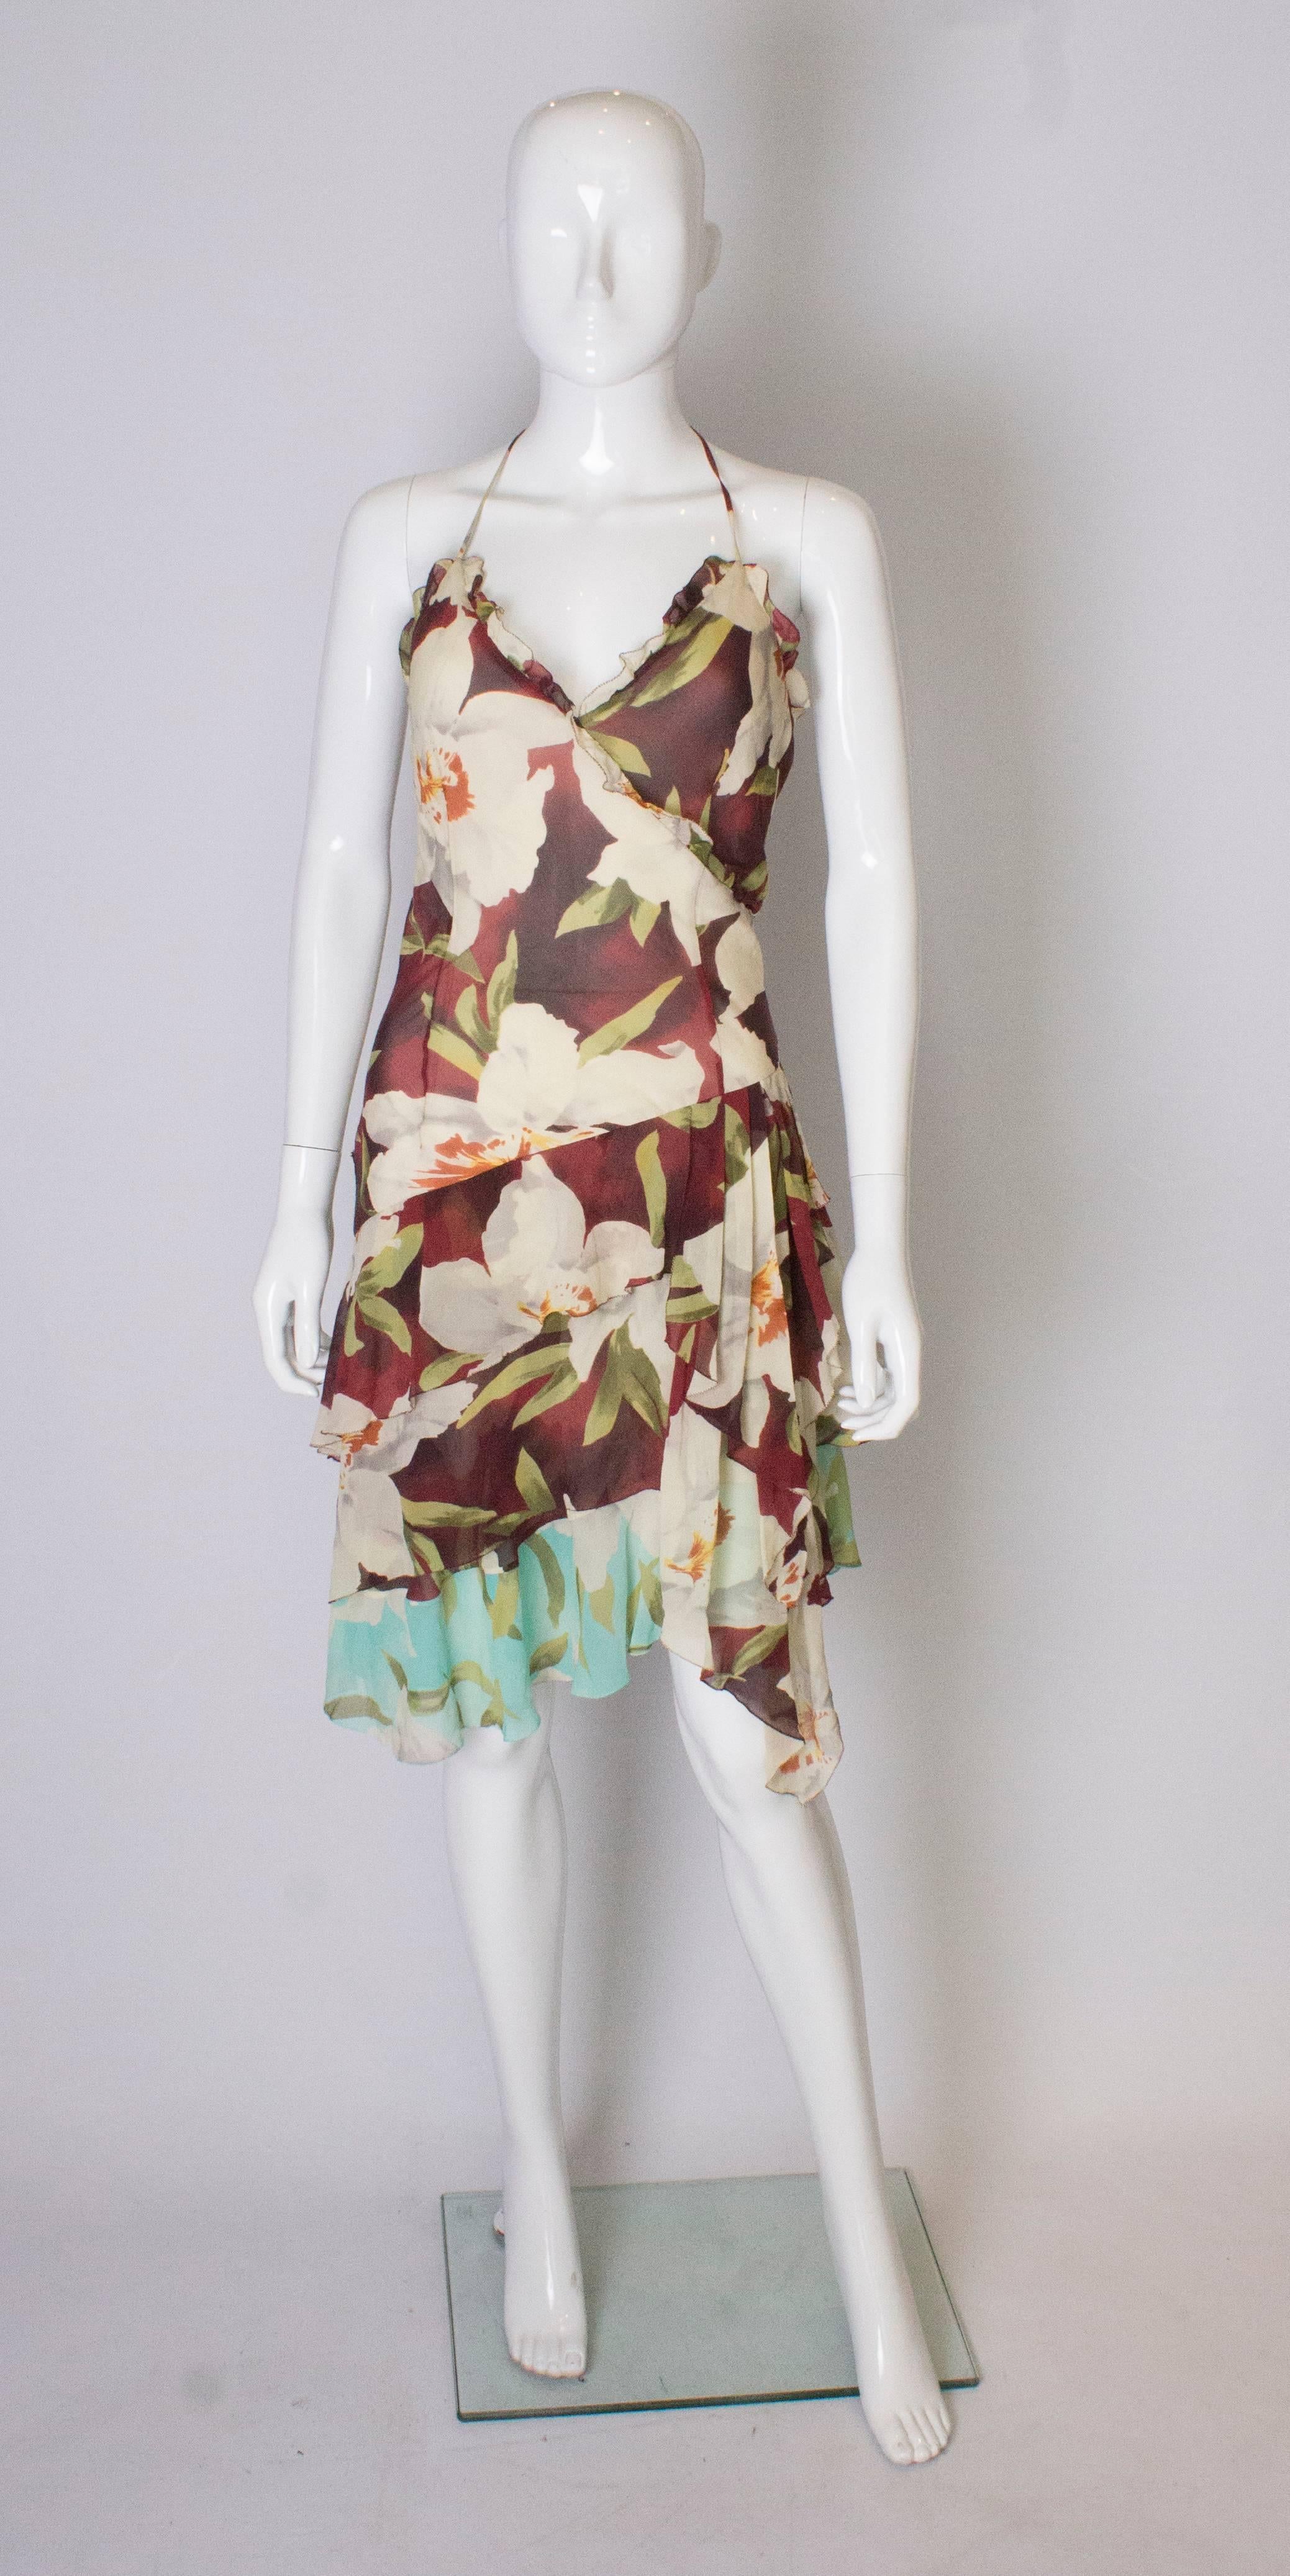 Une jolie robe en soie des années 1990, flottante et fleurie, signée Cacharel. La robe est un imprimé floral avec des couches de soie,   et a des bretelles spaghetti et un ourlet en mouchoir de poche.  Il possède une fermeture éclair latérale et est